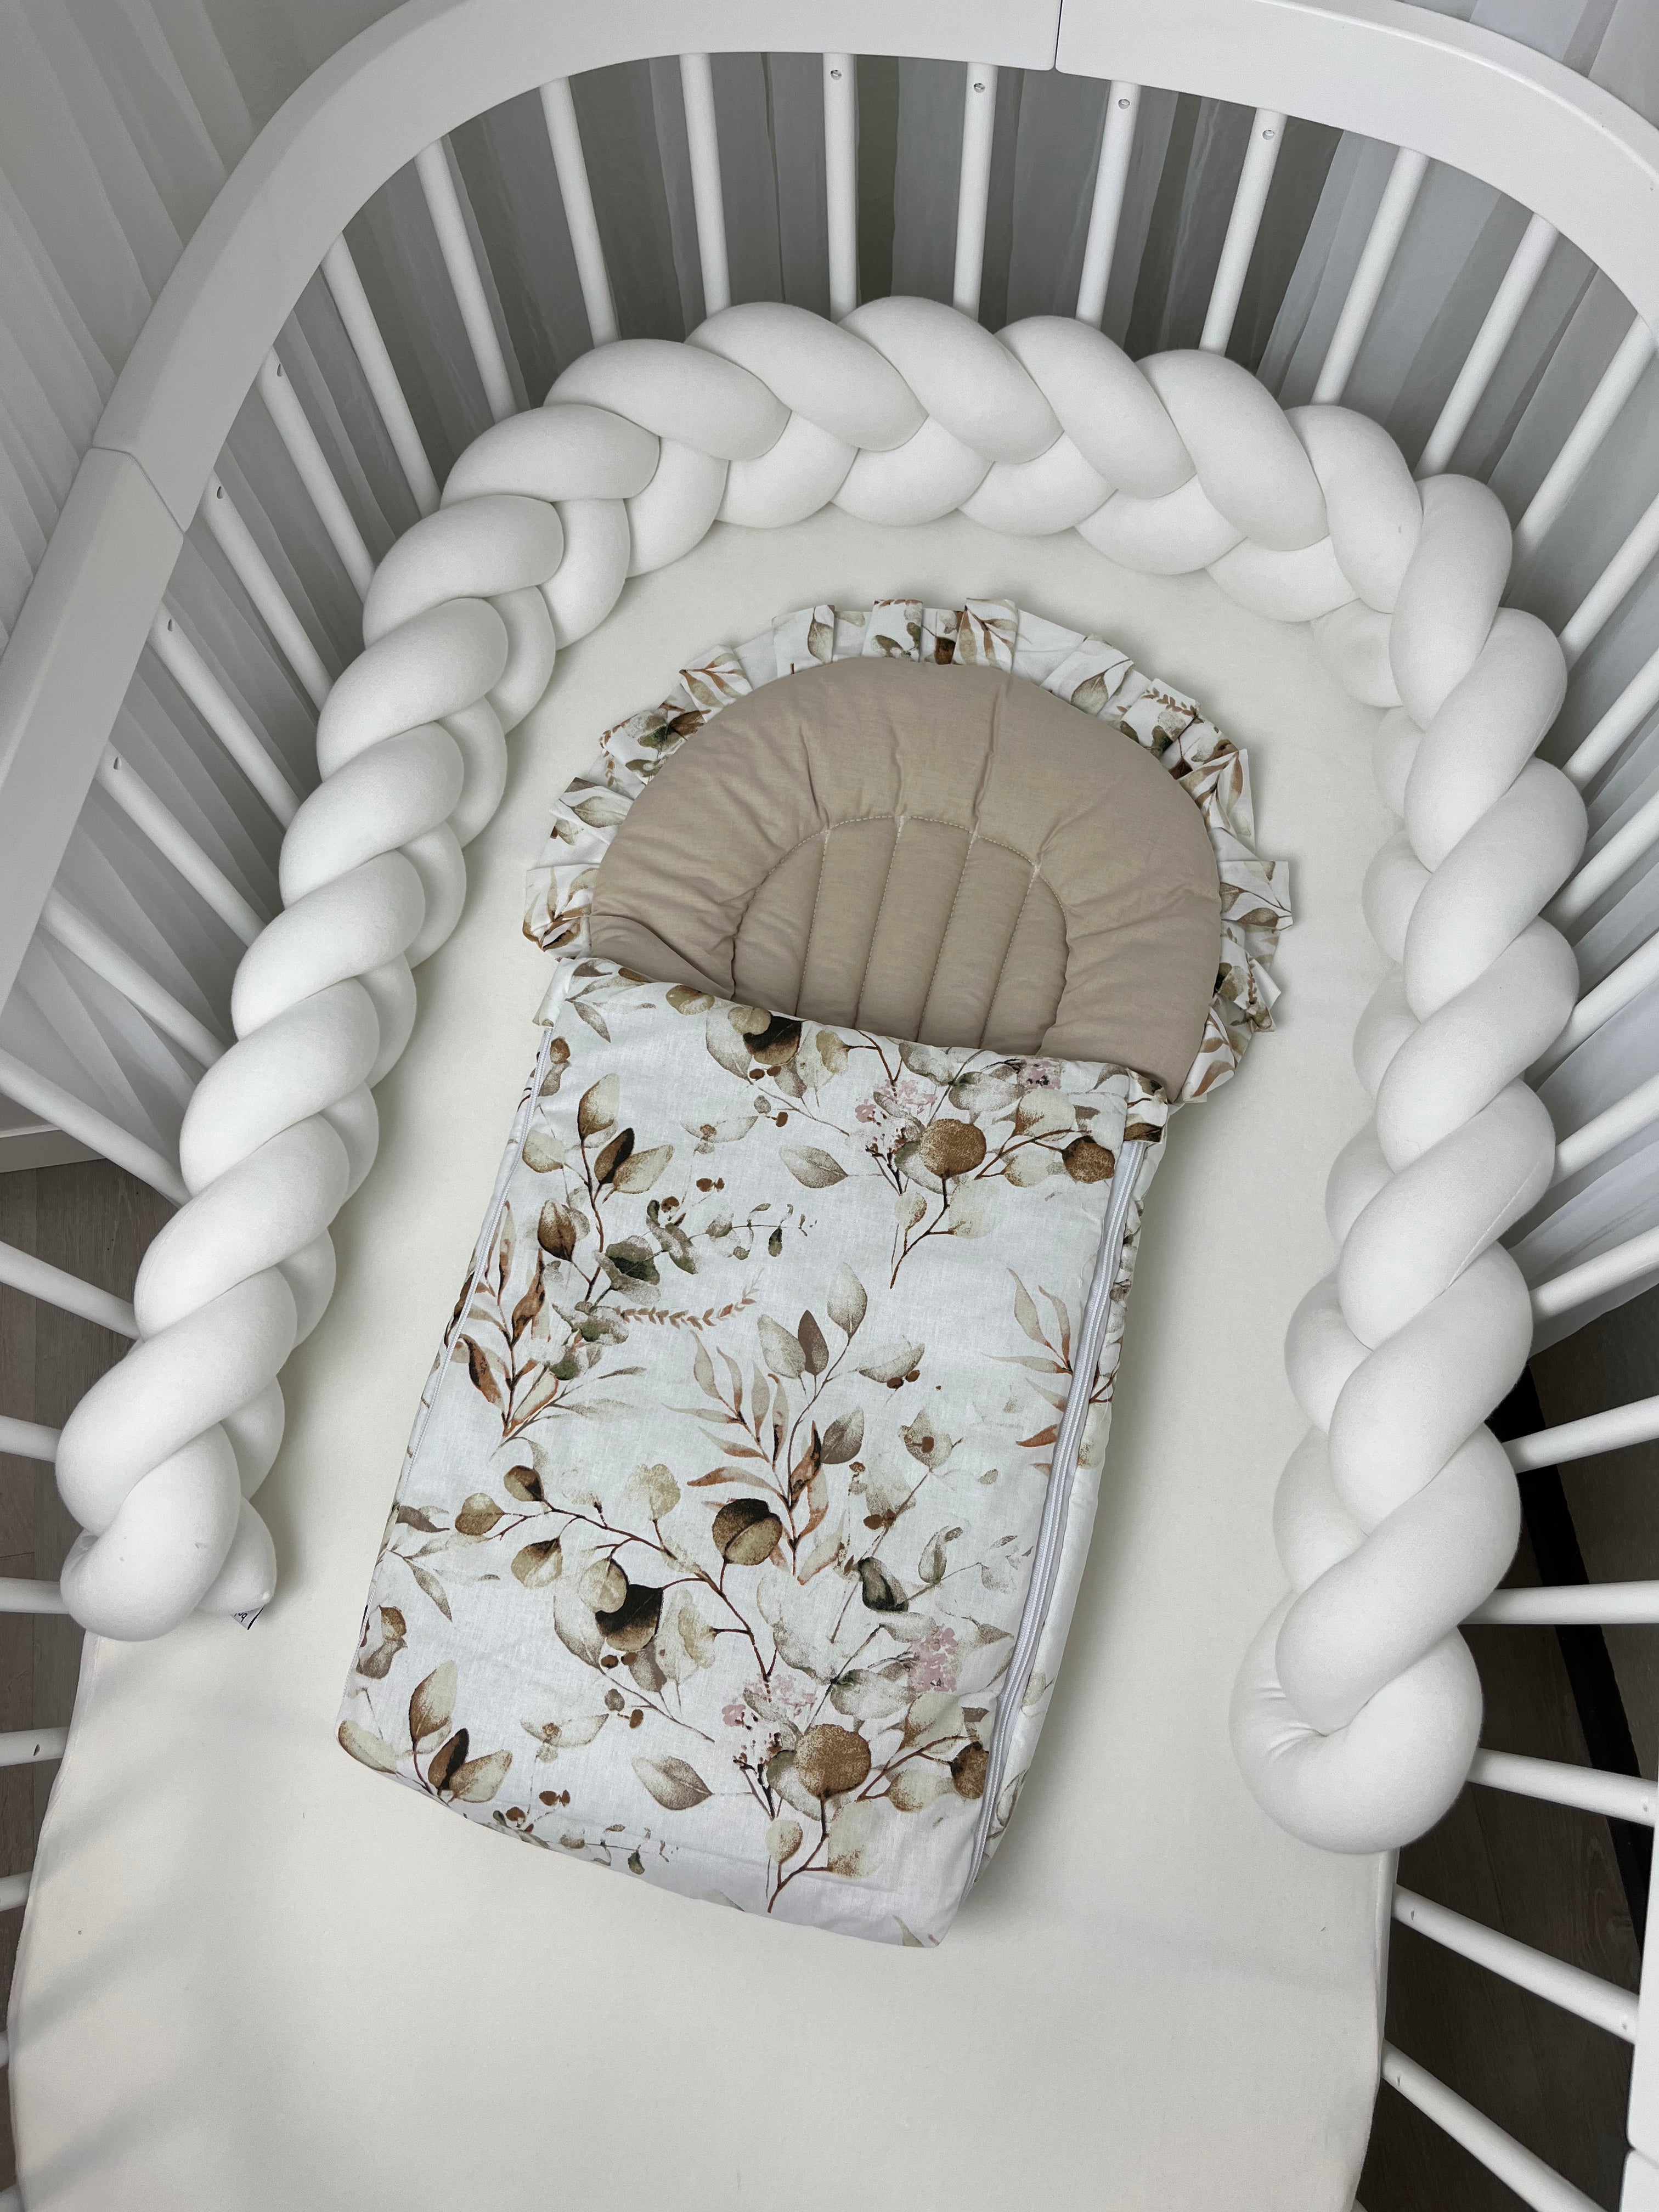 Flacher Babyschlafsack mit Wellenschnitt & Rüschen | Baumwolle mit Muster | Limited Edition